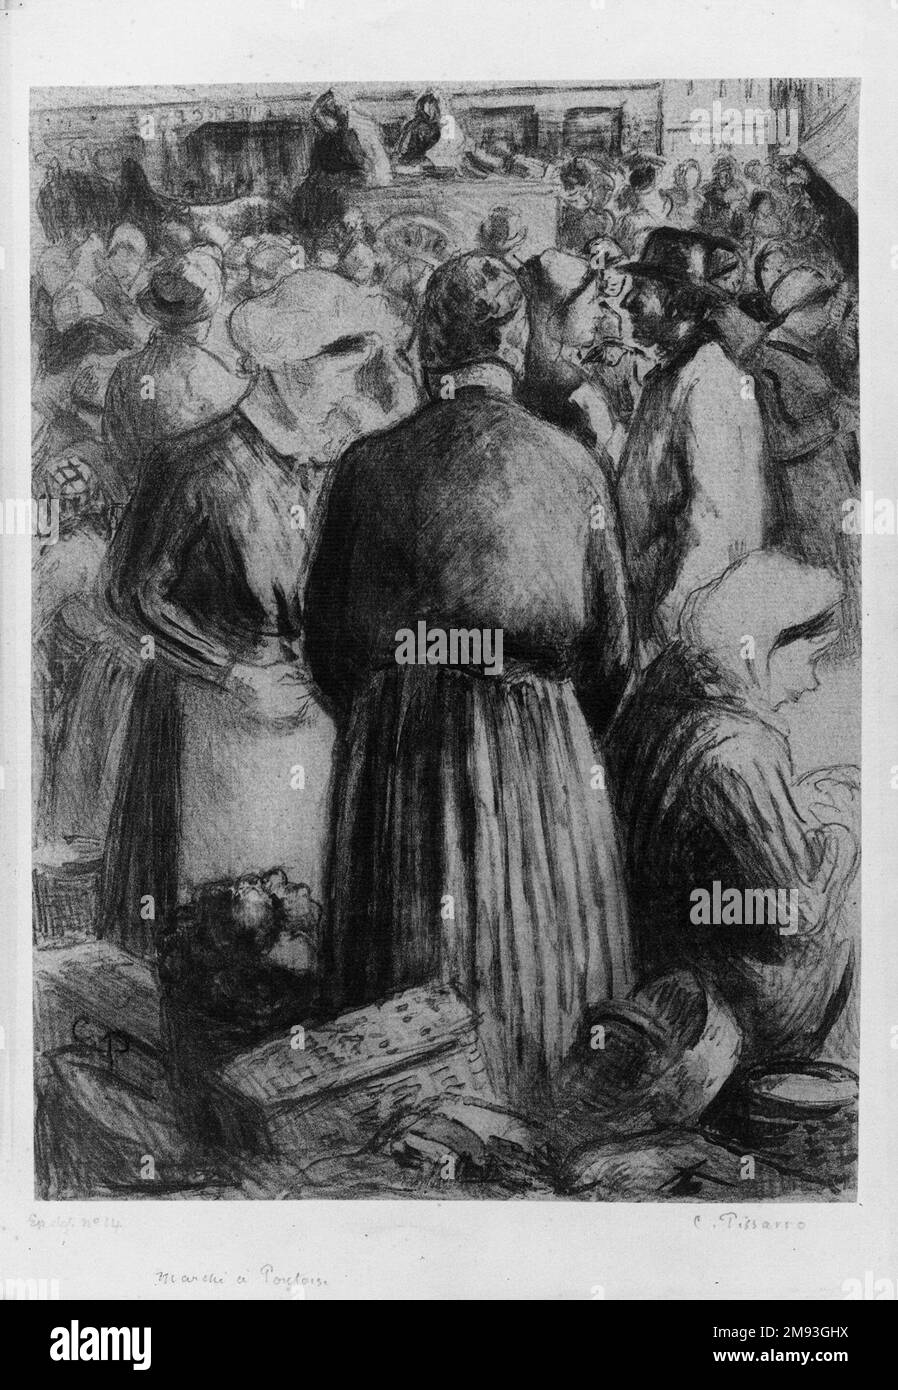 Market at Pontoise (Marché à Pontoise) Camille Jacob Pissarro (Saint Thomas, (former Danish West Indies), 1830–1903, Paris, France). , 1895. Lithograph on chine colle paper, 11 15/16 x 8 3/4 in. (30.4 x 22.3 cm).   European Art 1895 Stock Photo